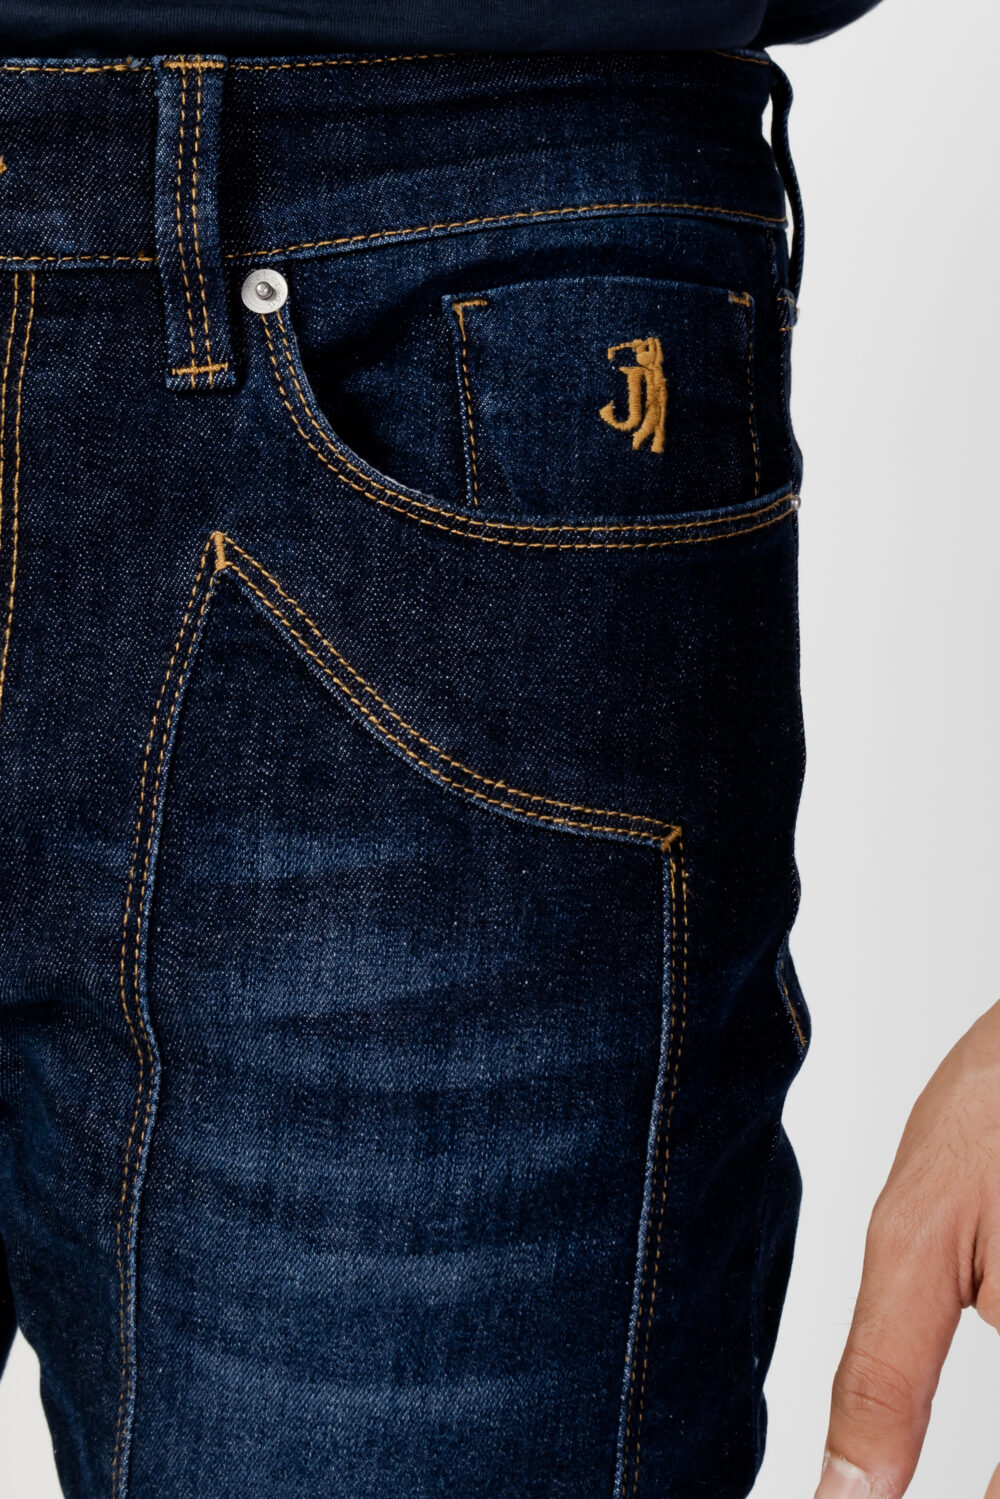 Jeans slim Jeckerson Denim scuro - Foto 2